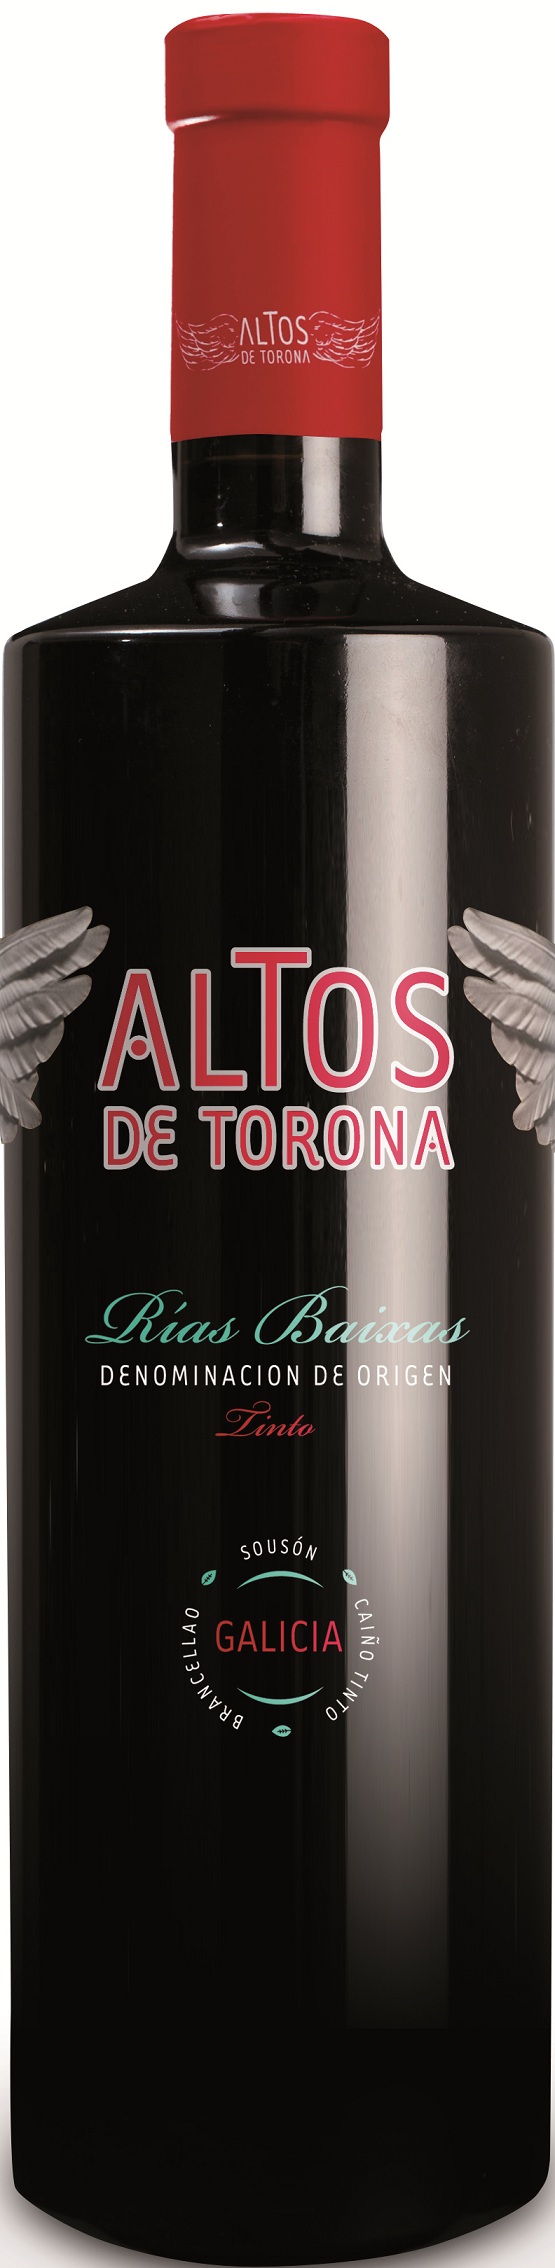 Imagen de la botella de Vino Altos de Torona Tinto